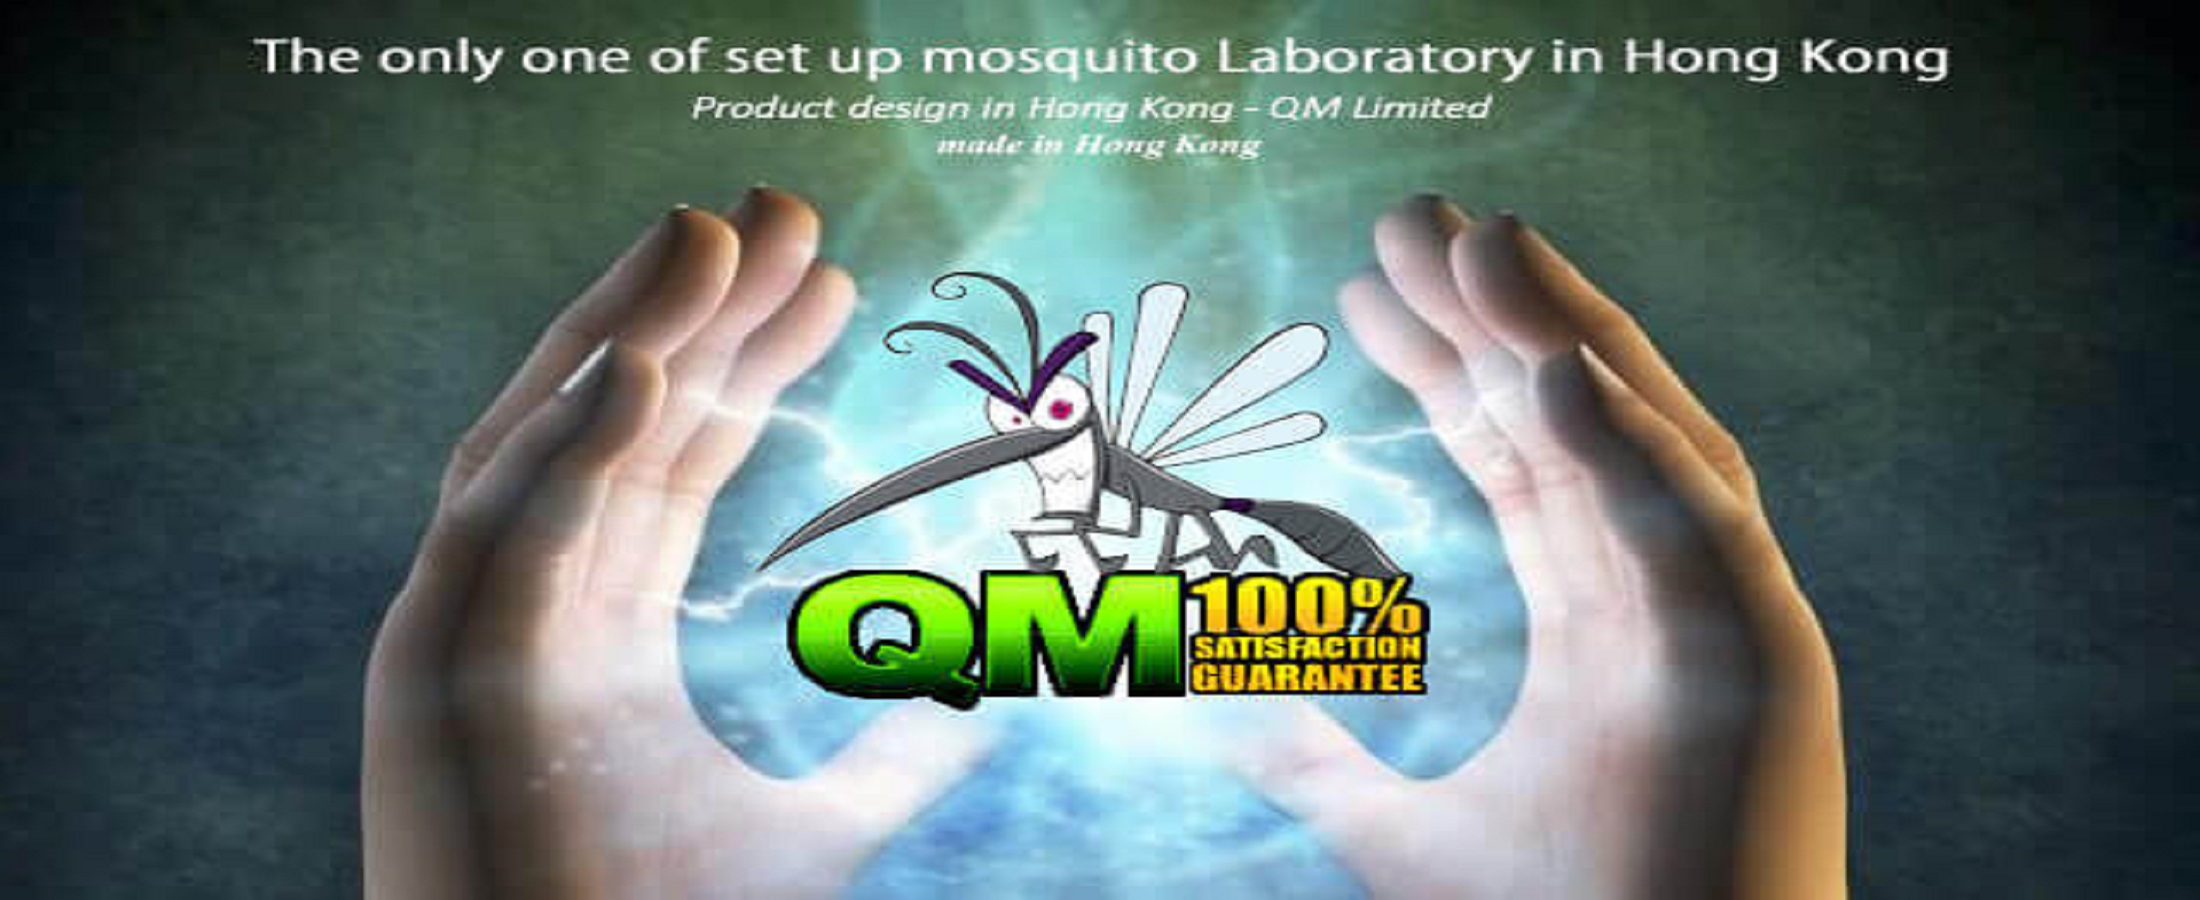 香港唯一養蚊研究室,滅蚊機,戶外滅蚊器